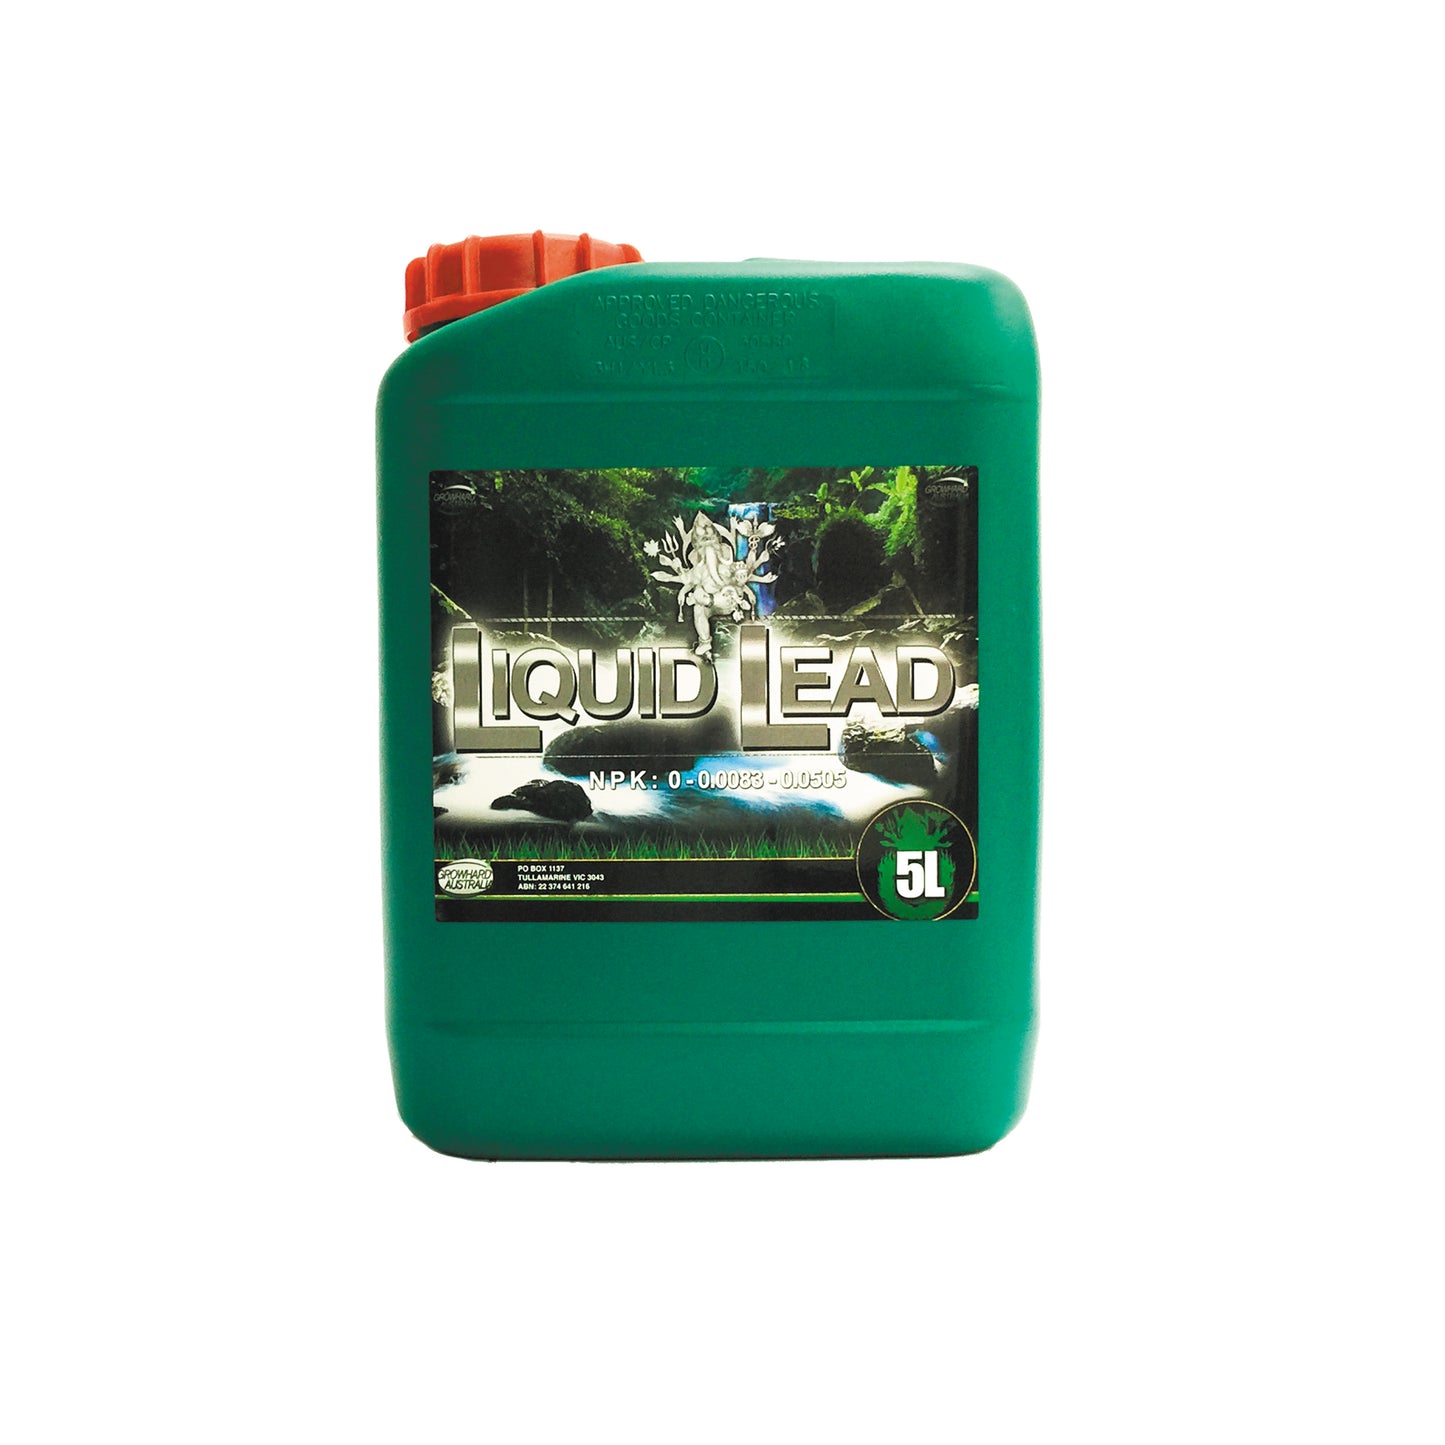 Liquid Lead - Growhard Australia